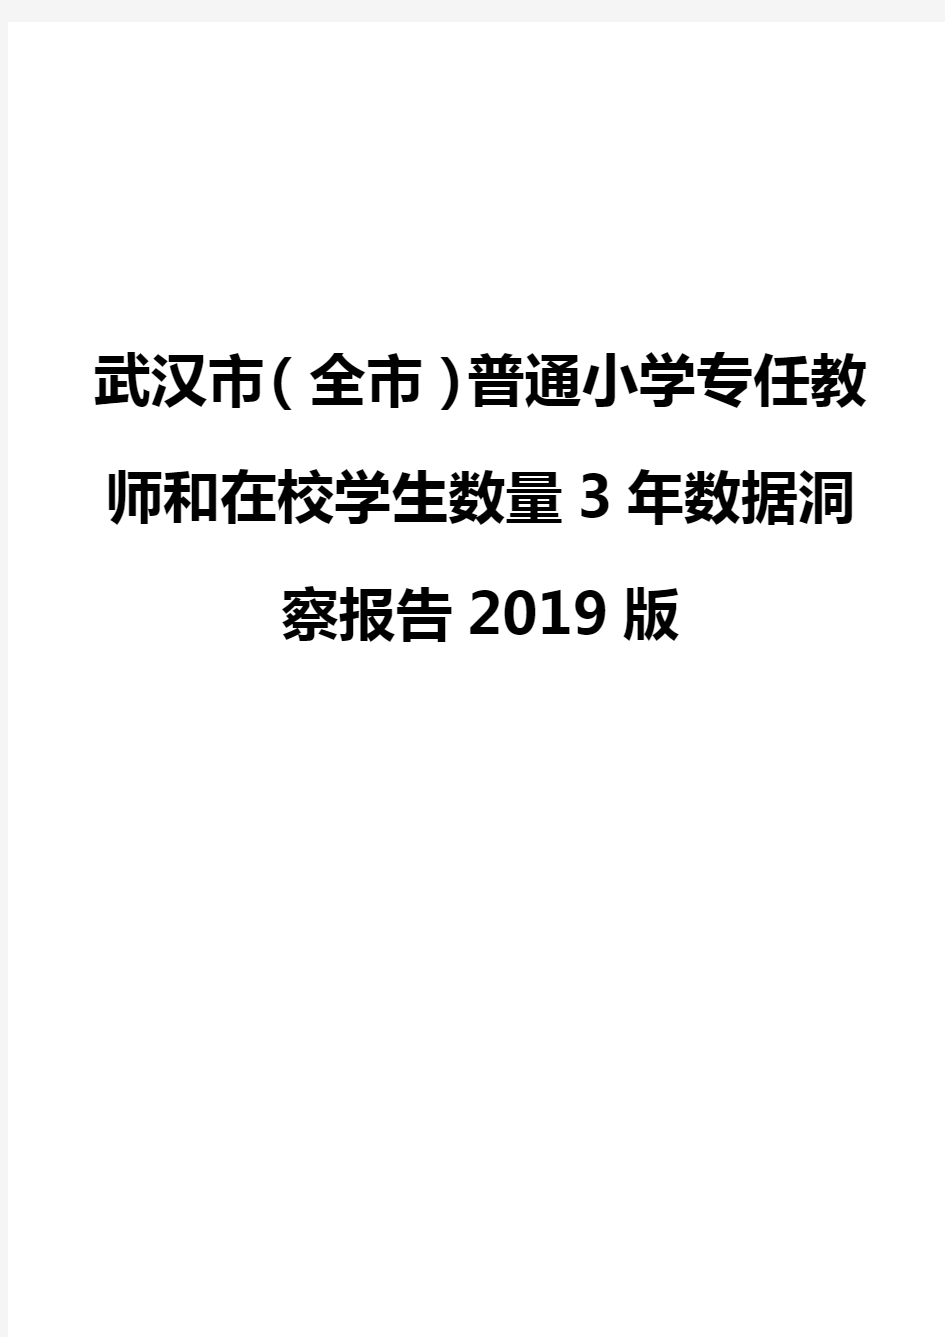 武汉市(全市)普通小学专任教师和在校学生数量3年数据洞察报告2019版